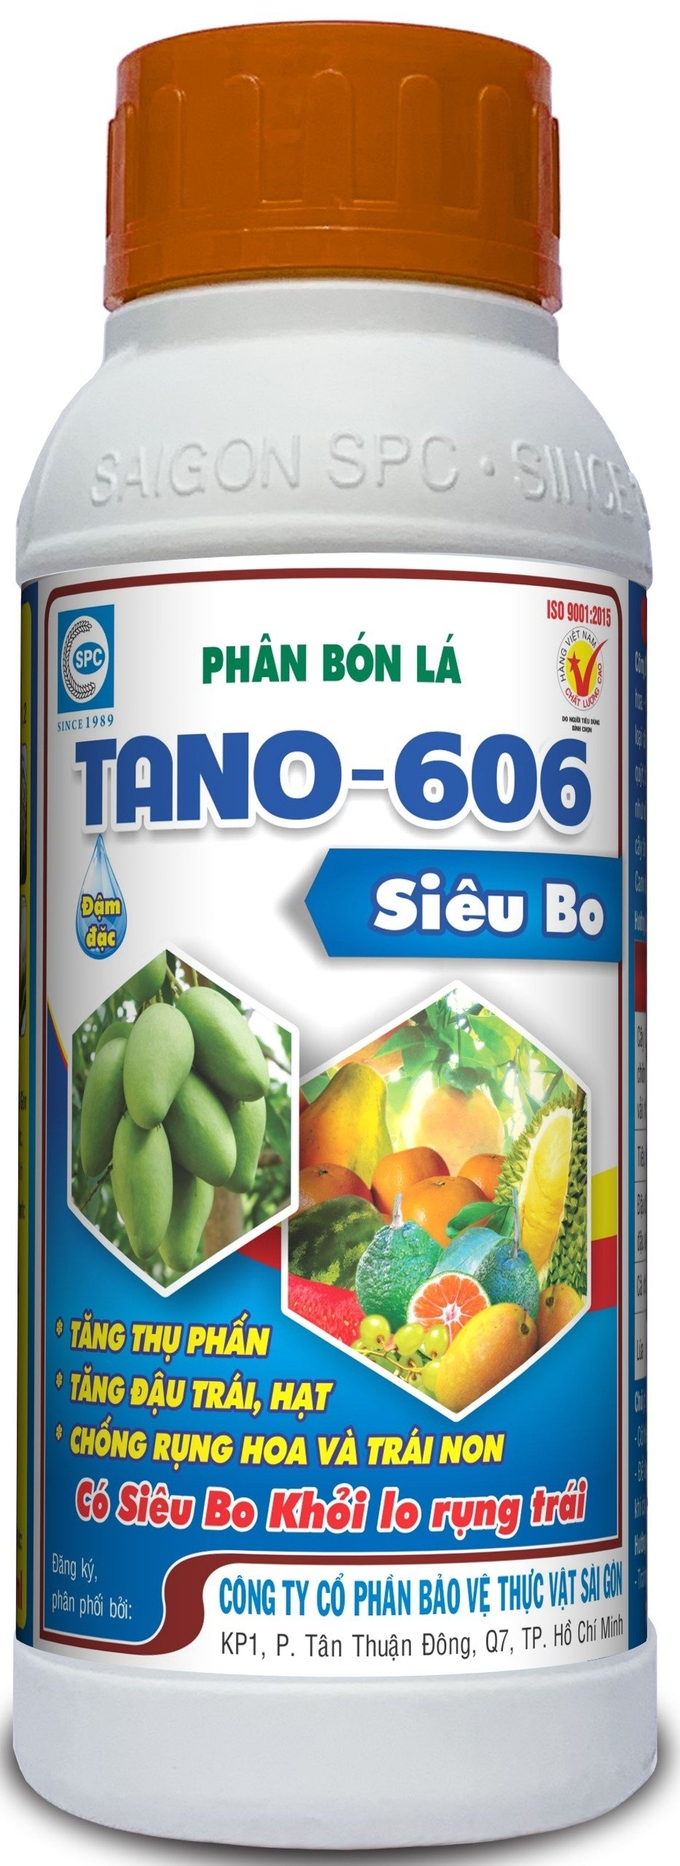 TANO 606 của Công ty Cổ phần BVTV Sài Gòn (SPC) được nhà nông trồng sầu riêng đánh giá là có hiệu quả kinh tế cao.